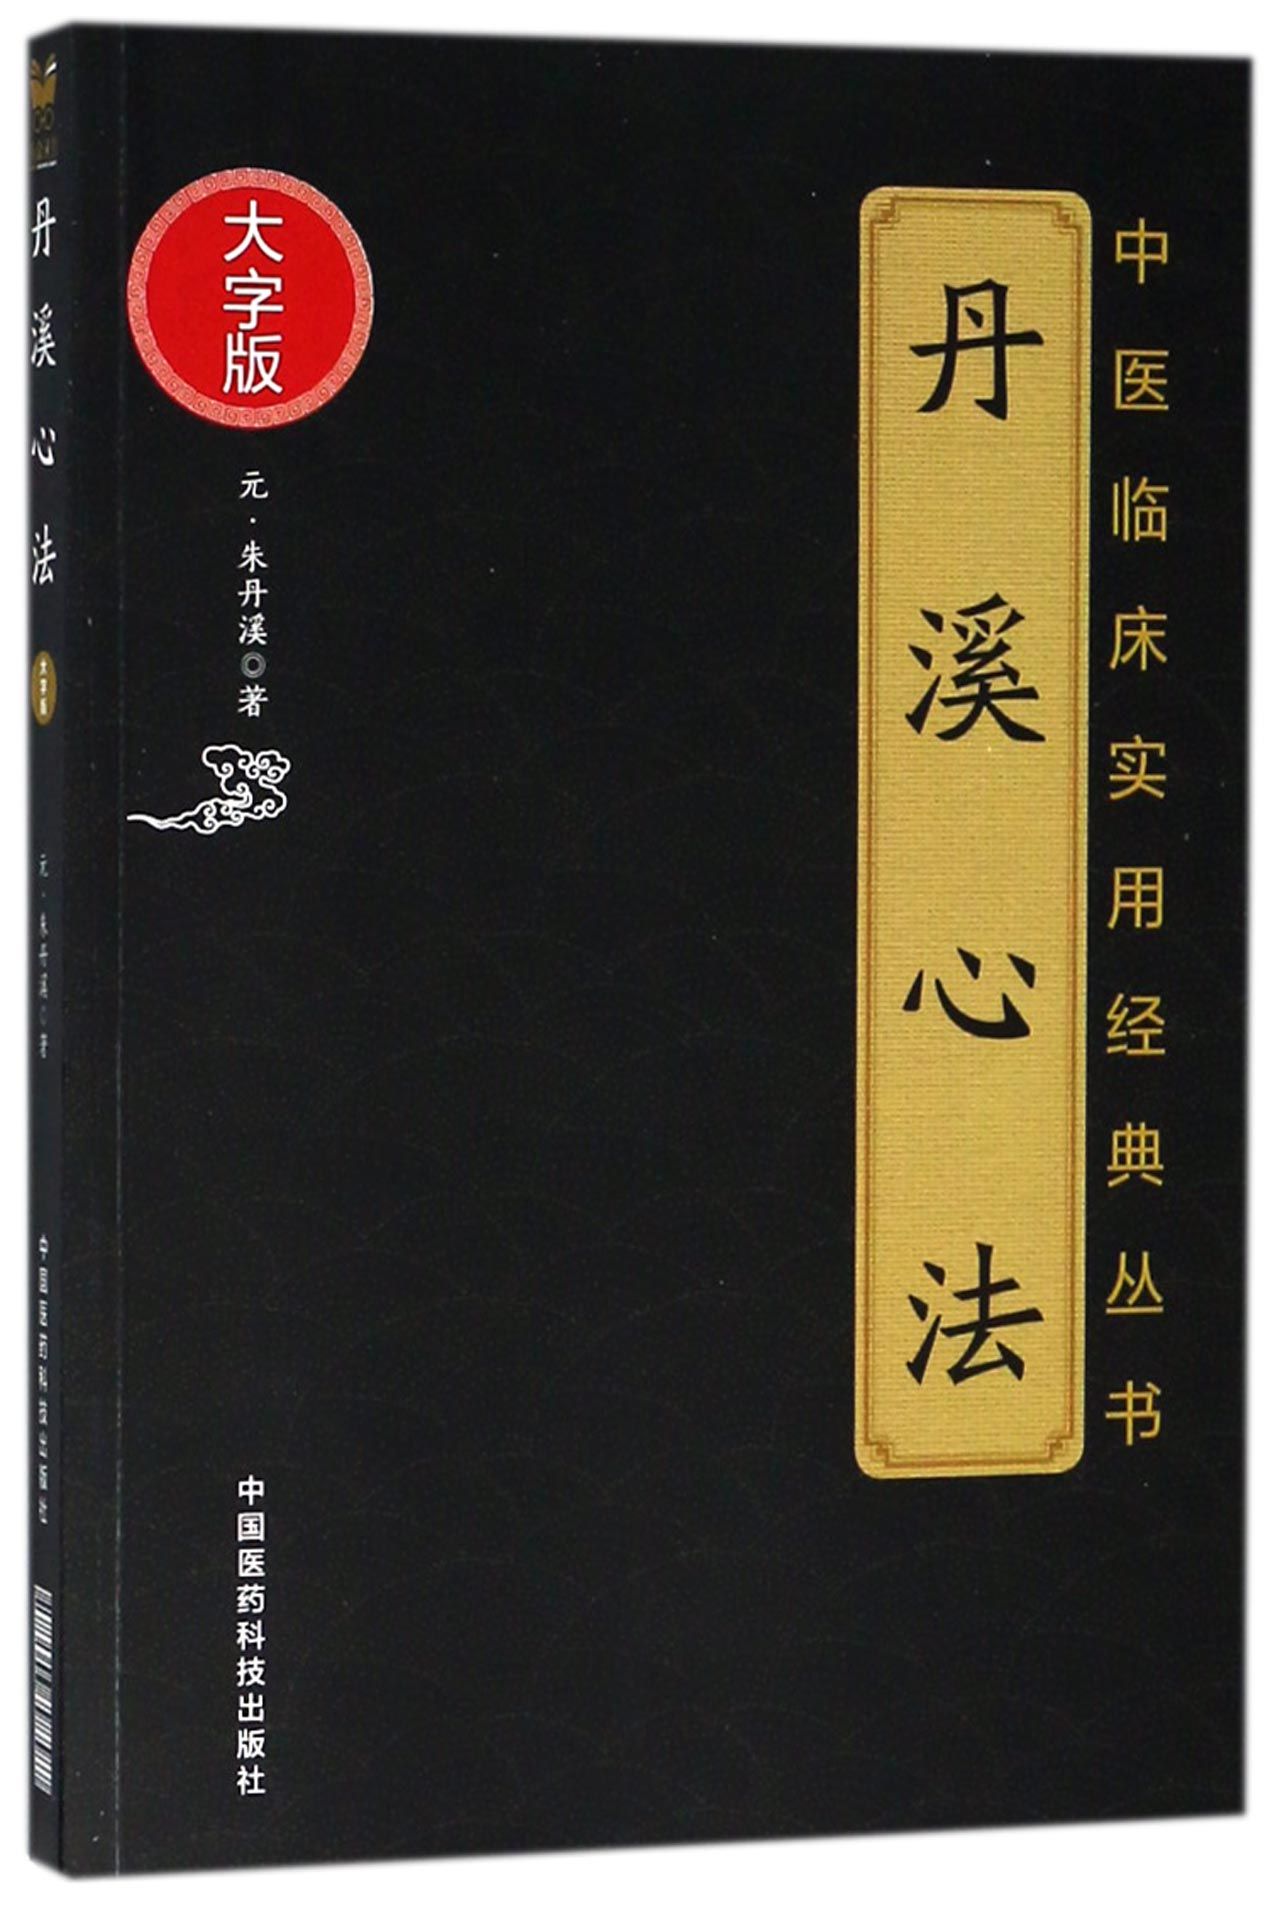 BK丹溪心法(大字版)/中医临床实用经典丛书